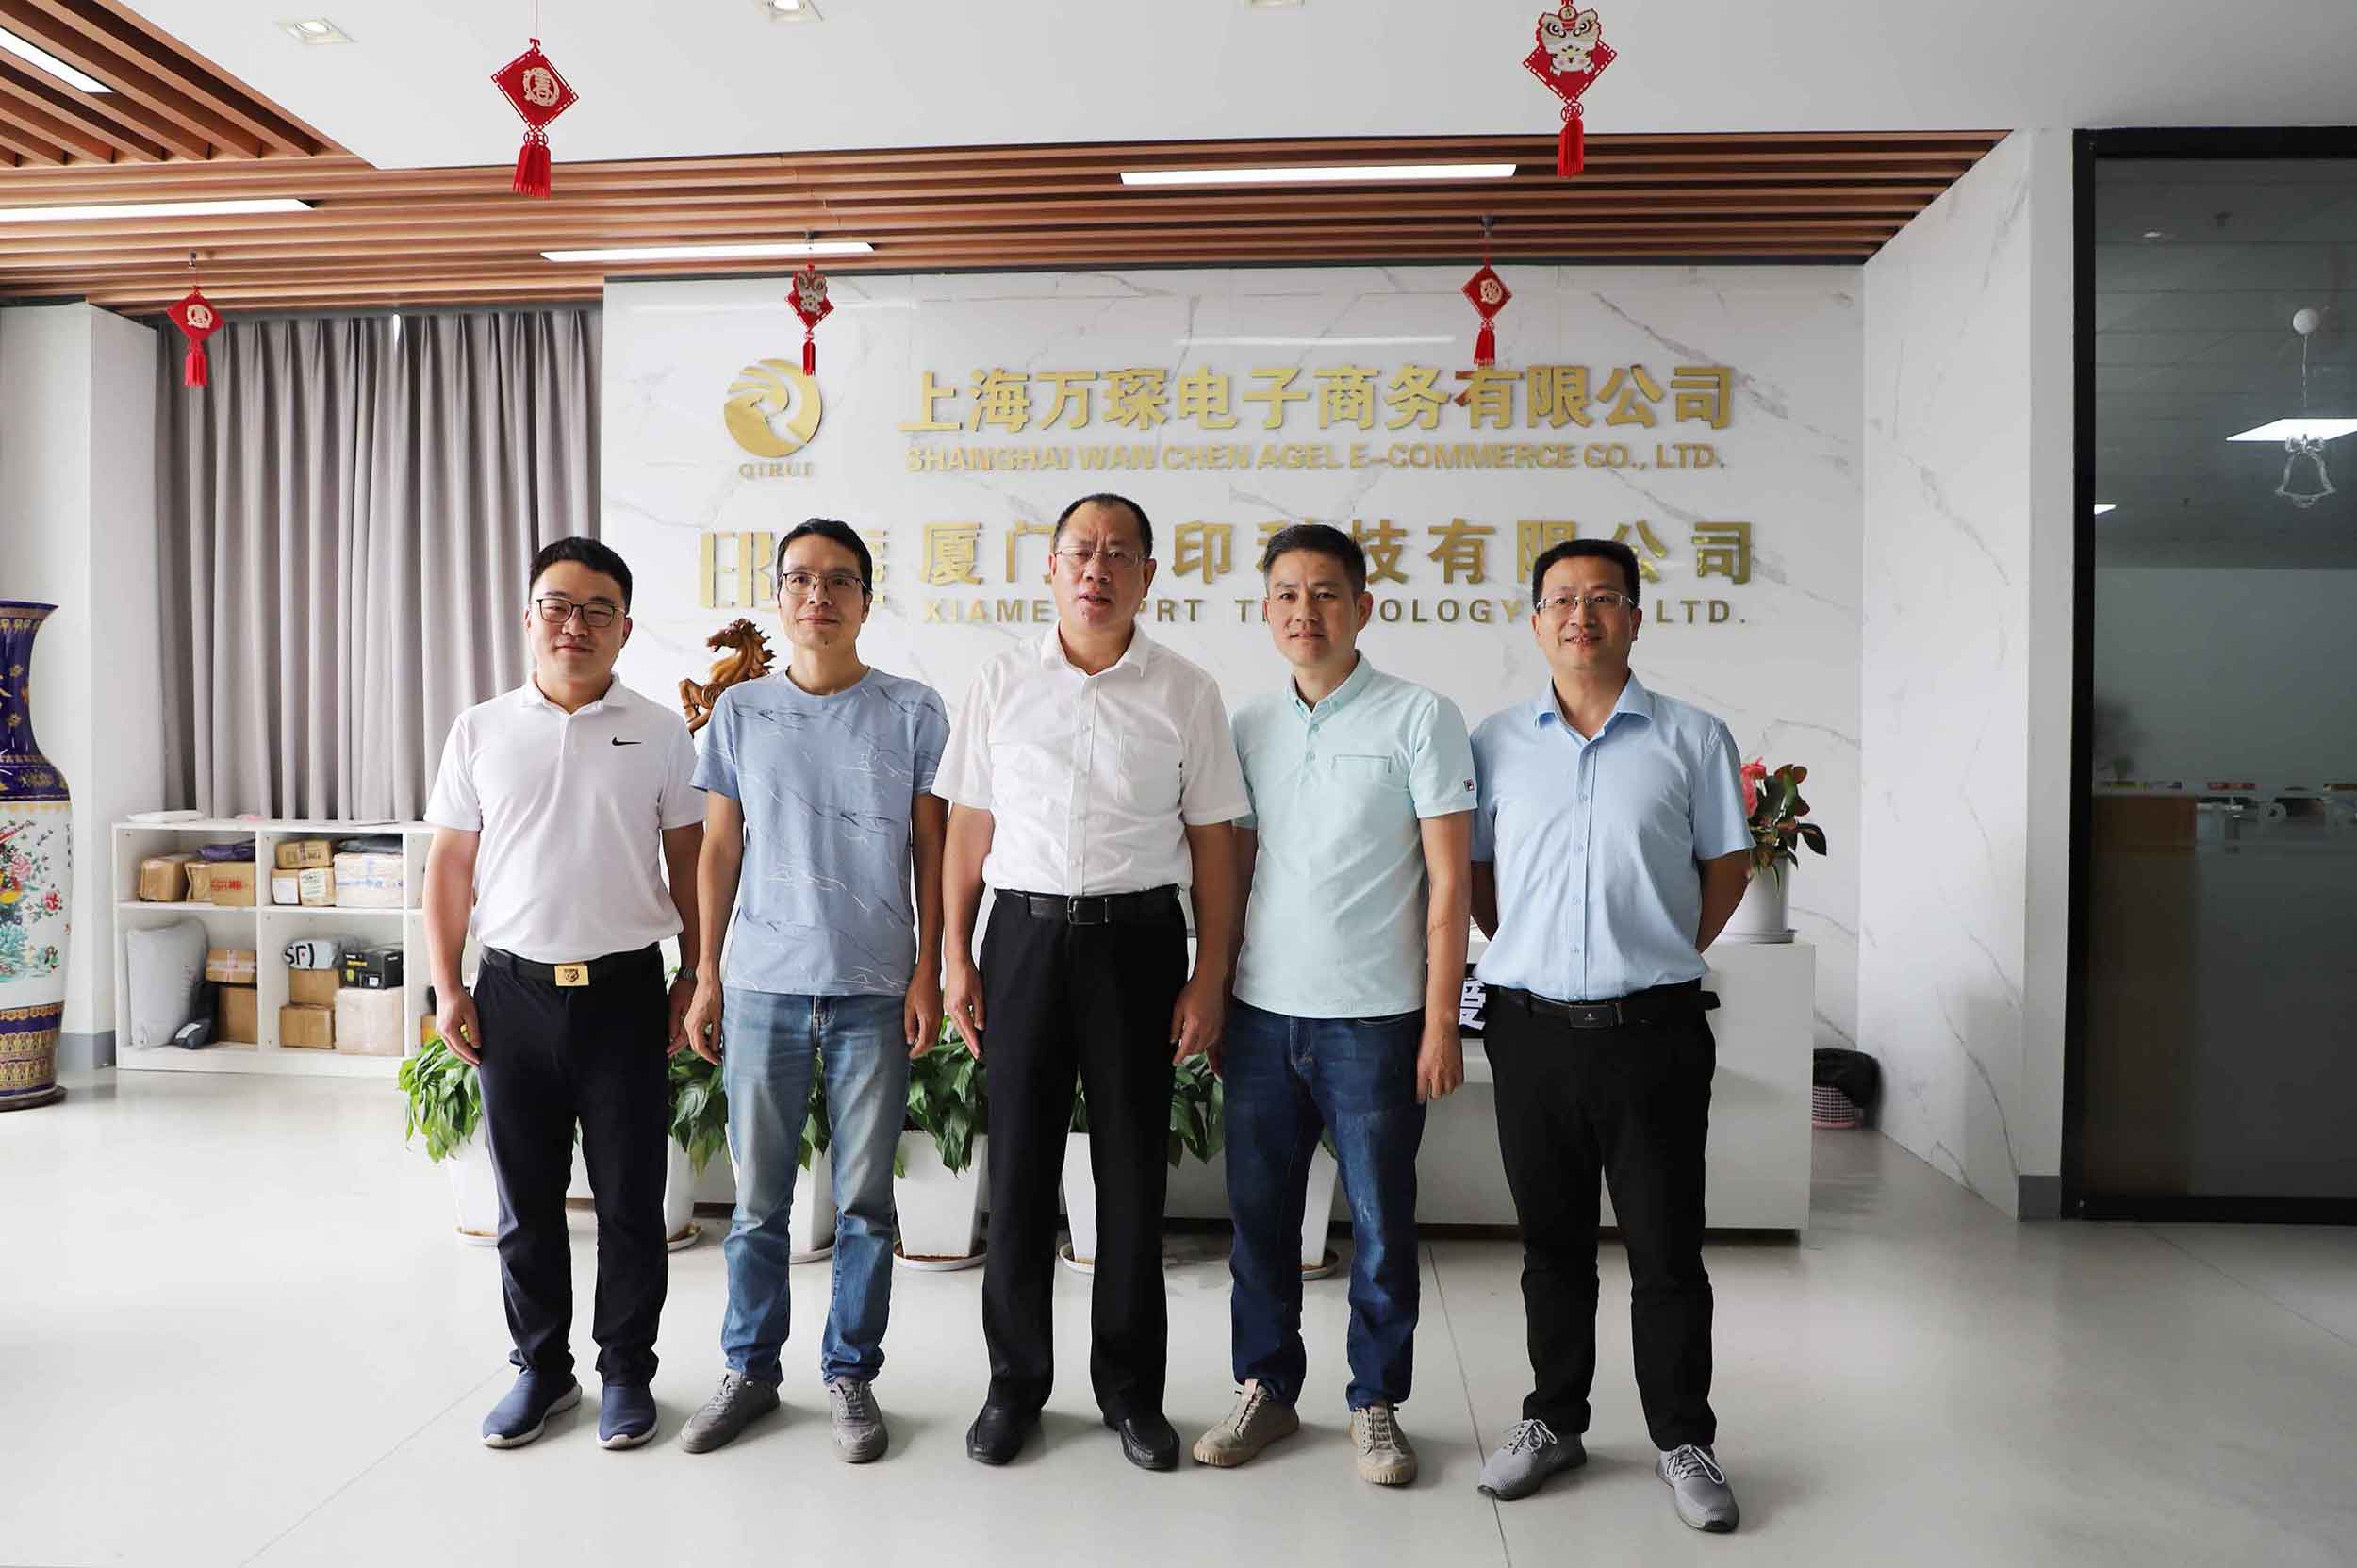 Zhang Yigong, stellvertretender Sekretär des Parteikomitees der Stadt Xiamen, wurde die IPRT-Technologieforschung vorgestellt